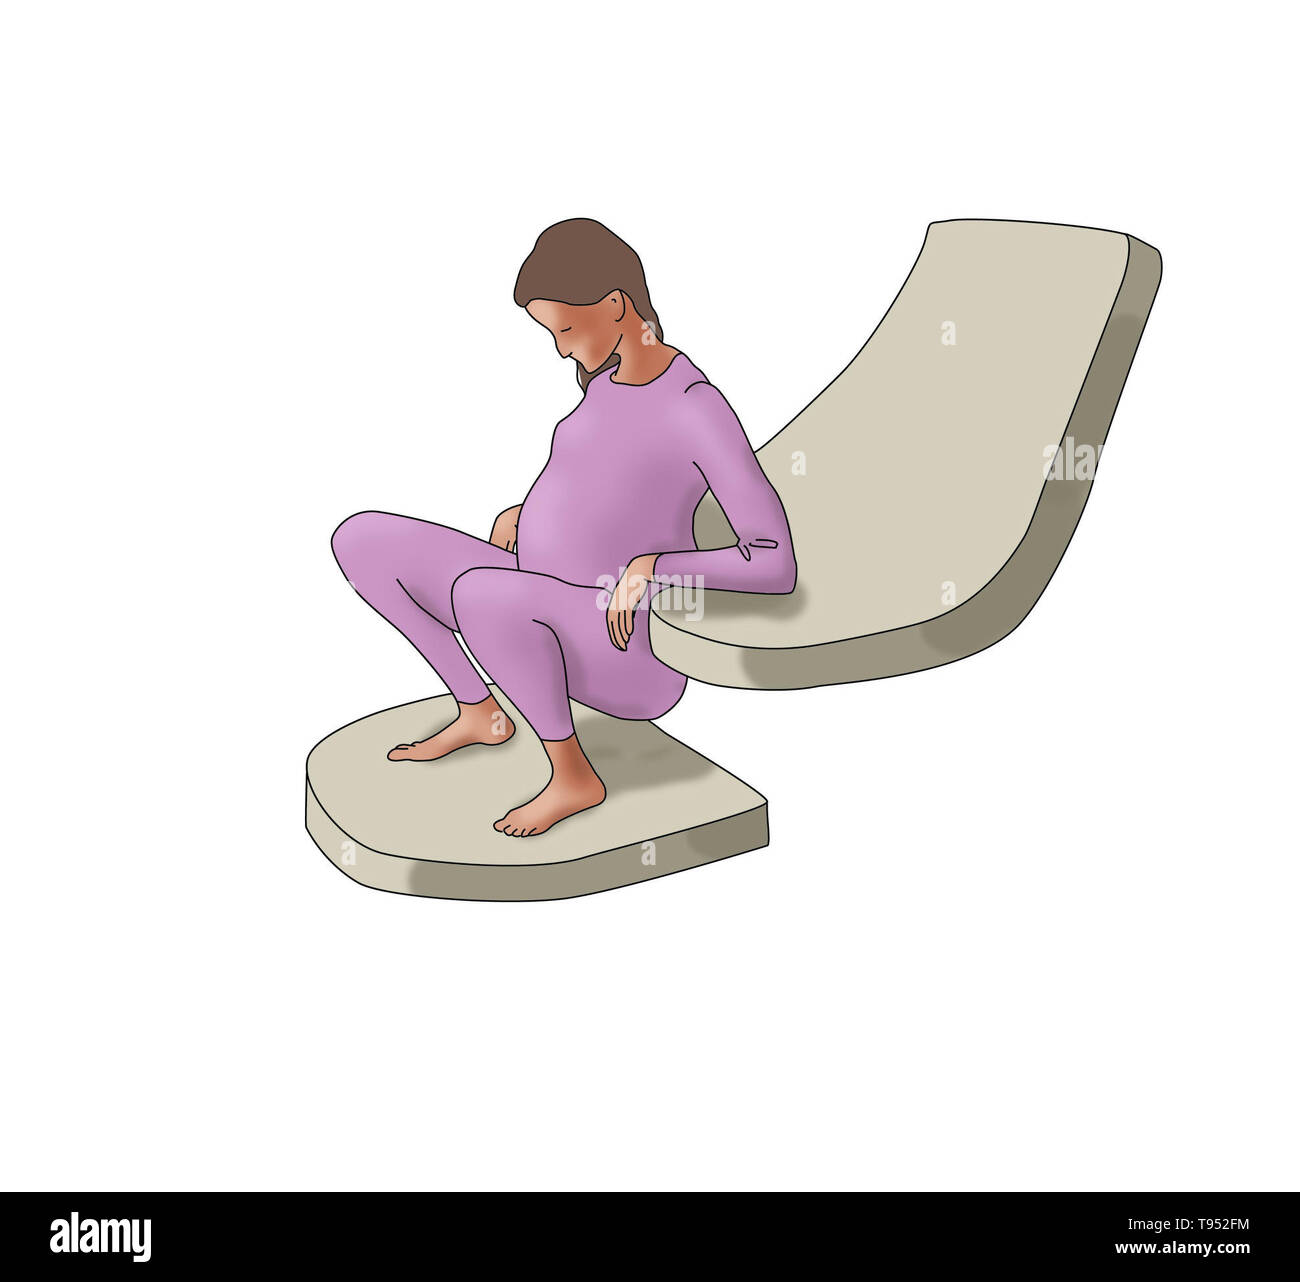 Ilustración que muestra a una mujer en la posición de cuclillas durante el parto. Foto de stock